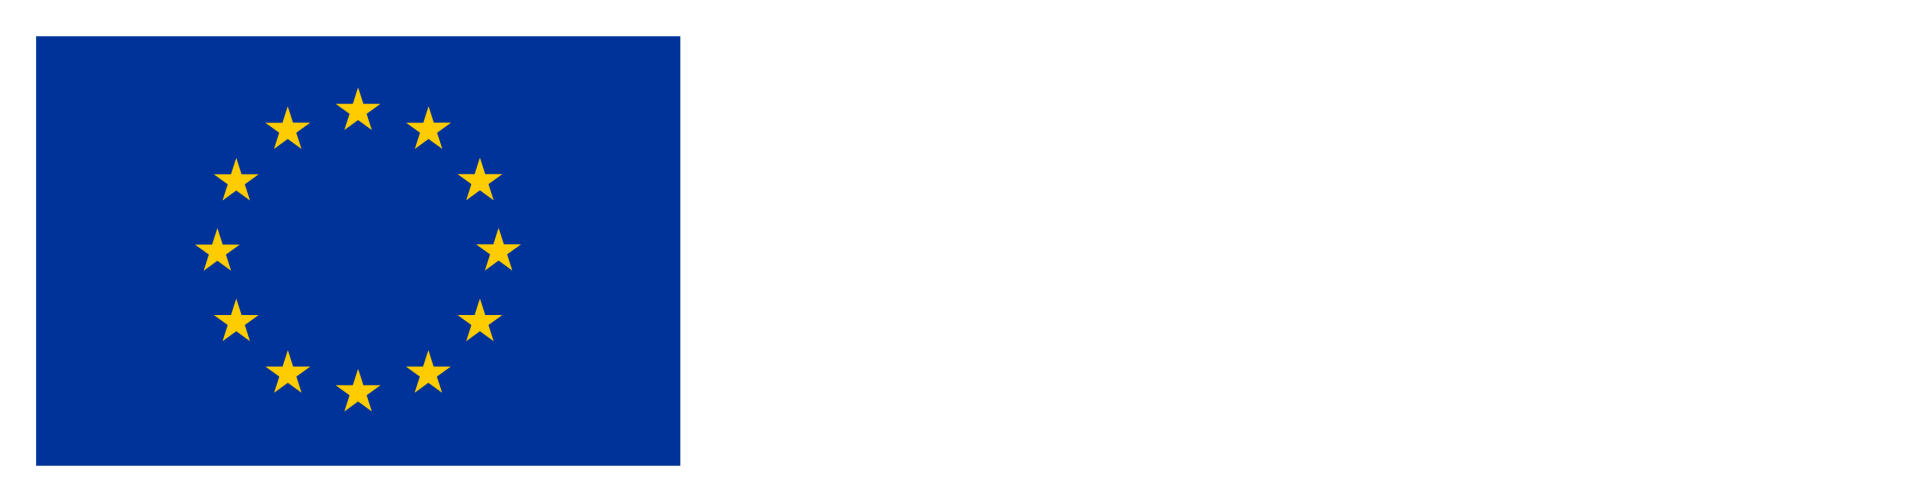 Logo de Financiado por la Unión Europea